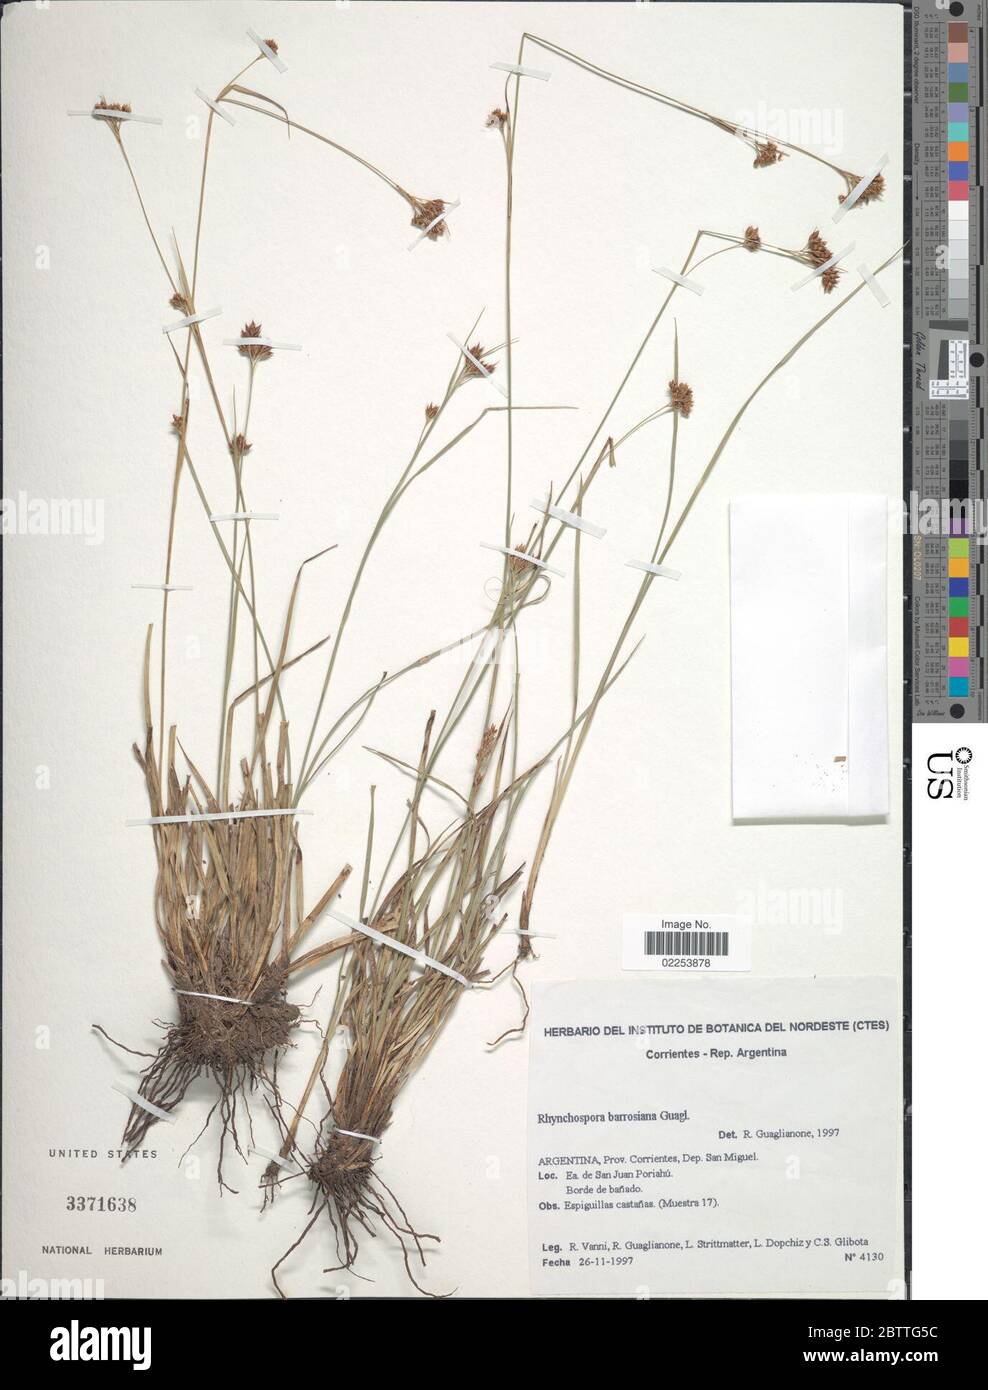 Rhynchospora barrosiana Guagl. Stock Photo